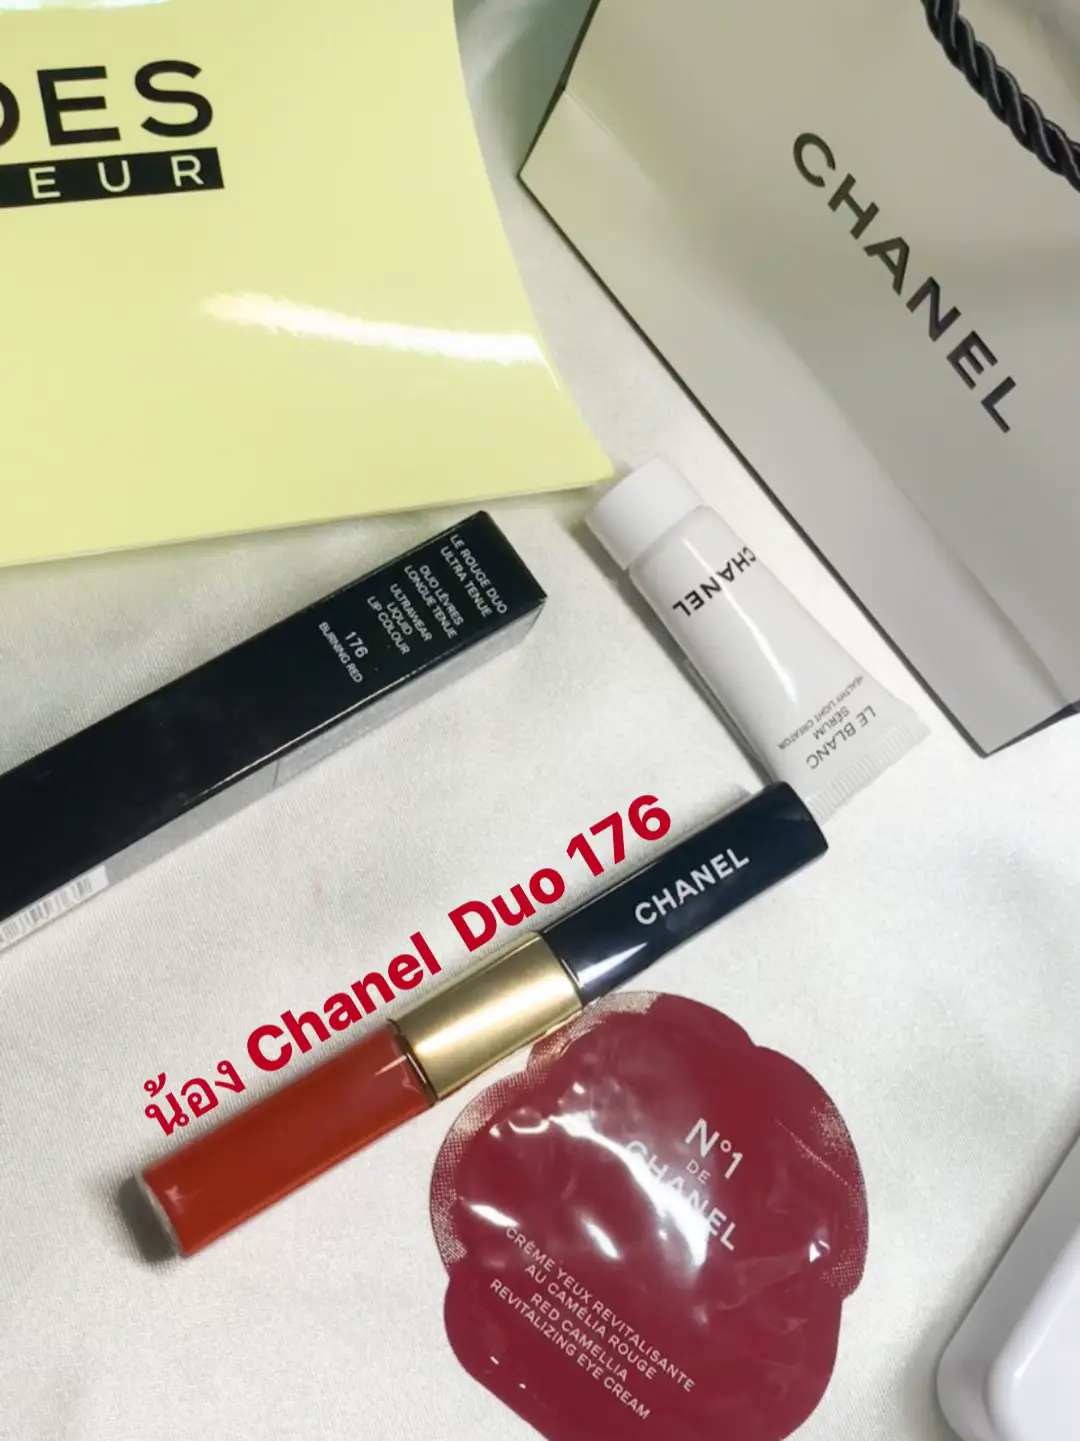 ลิป Chanel Duo Ultra Tenue 176, Gallery posted by GIG